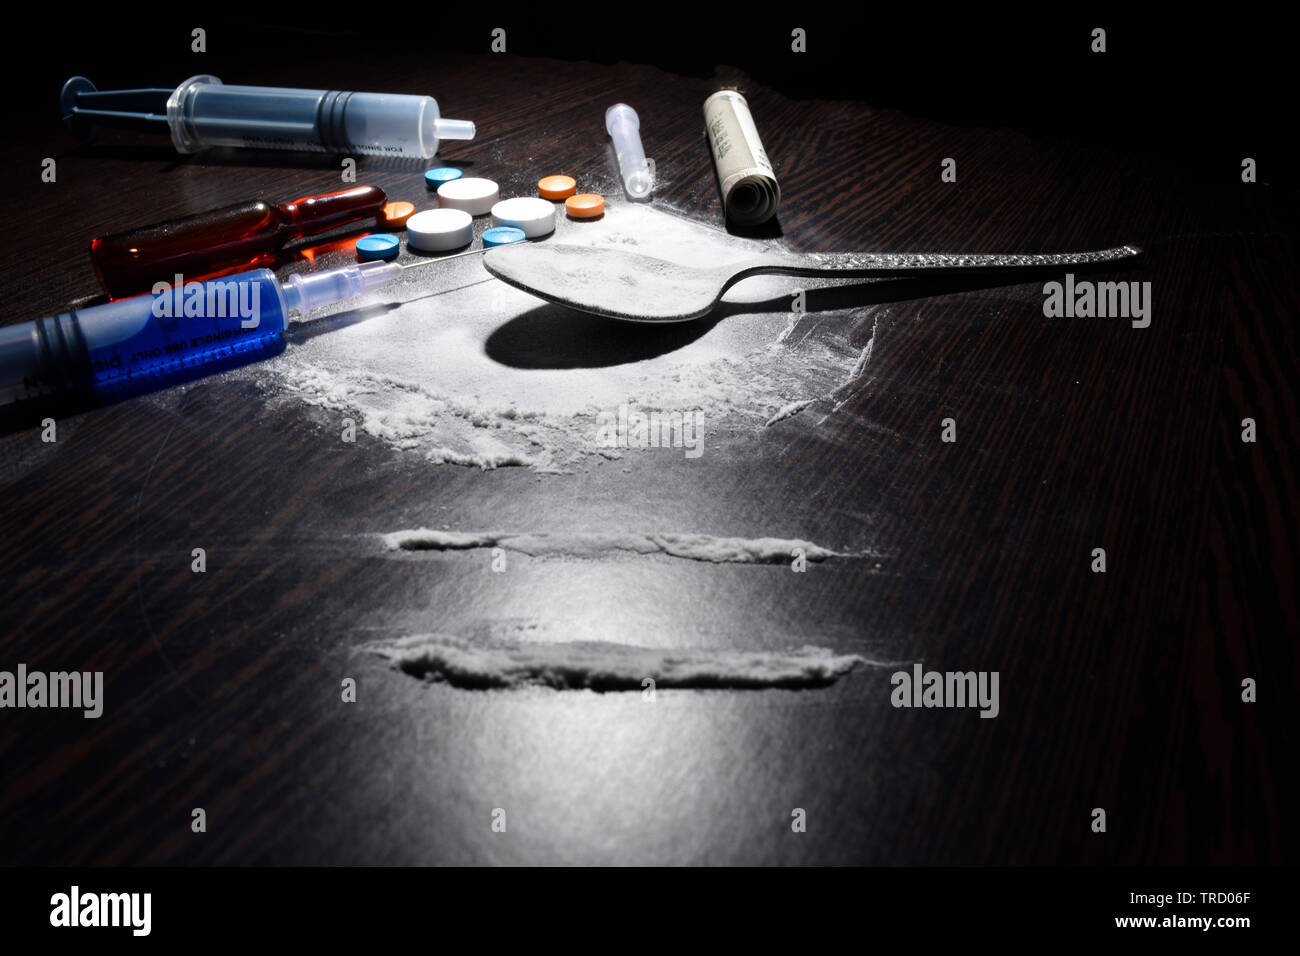 Il concetto di droga, cocaina, iniezione,tabella, cucchiaio sul tavolo scuro Foto Stock